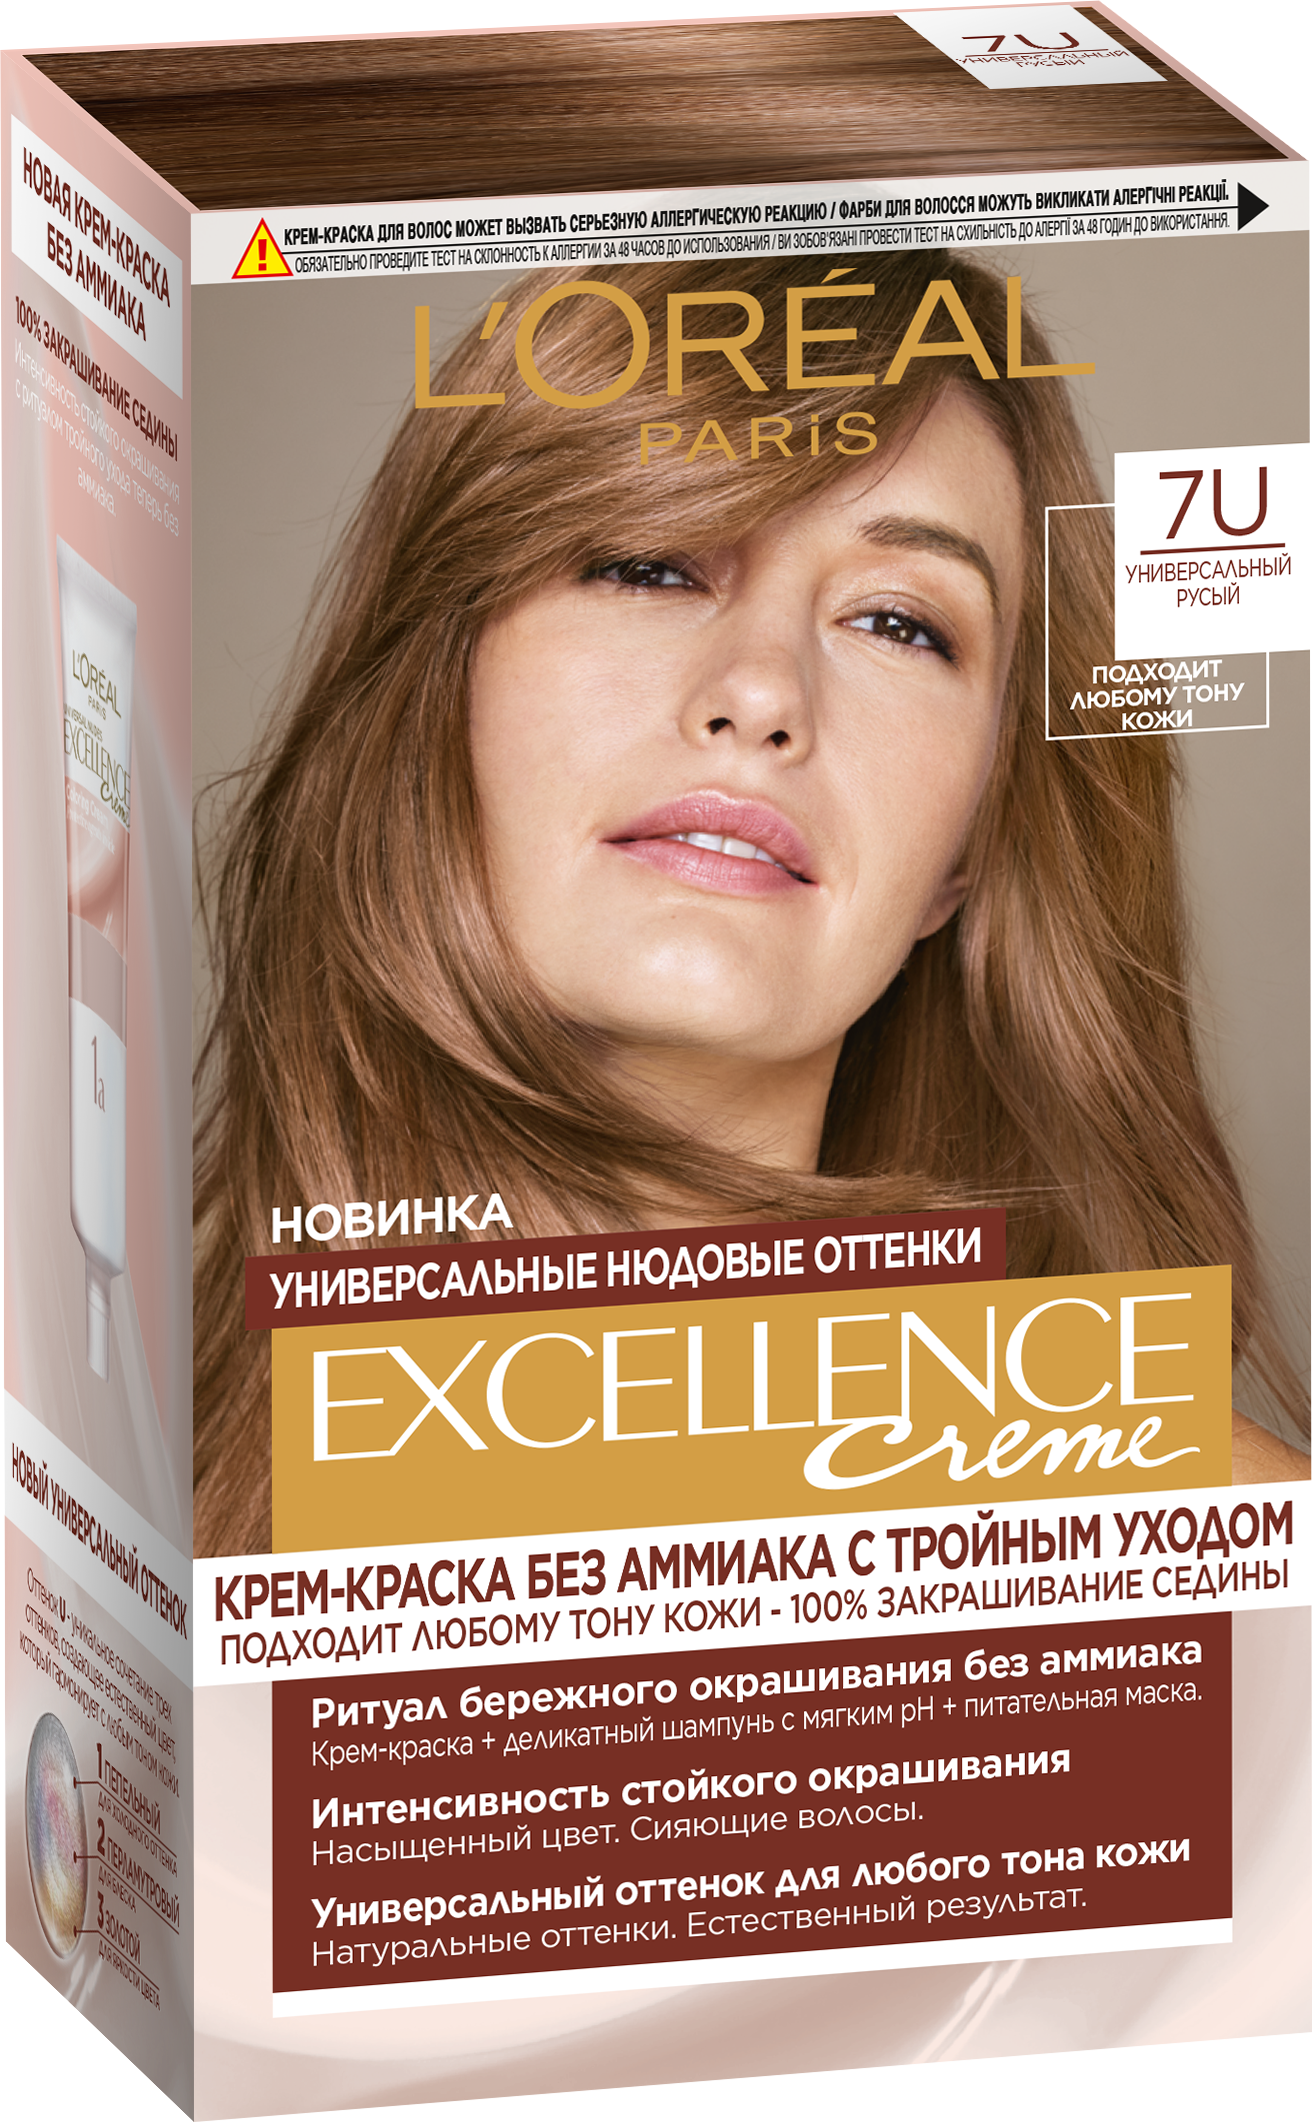 L'Oreal Краска для волос Excellence 7U универсальный русый